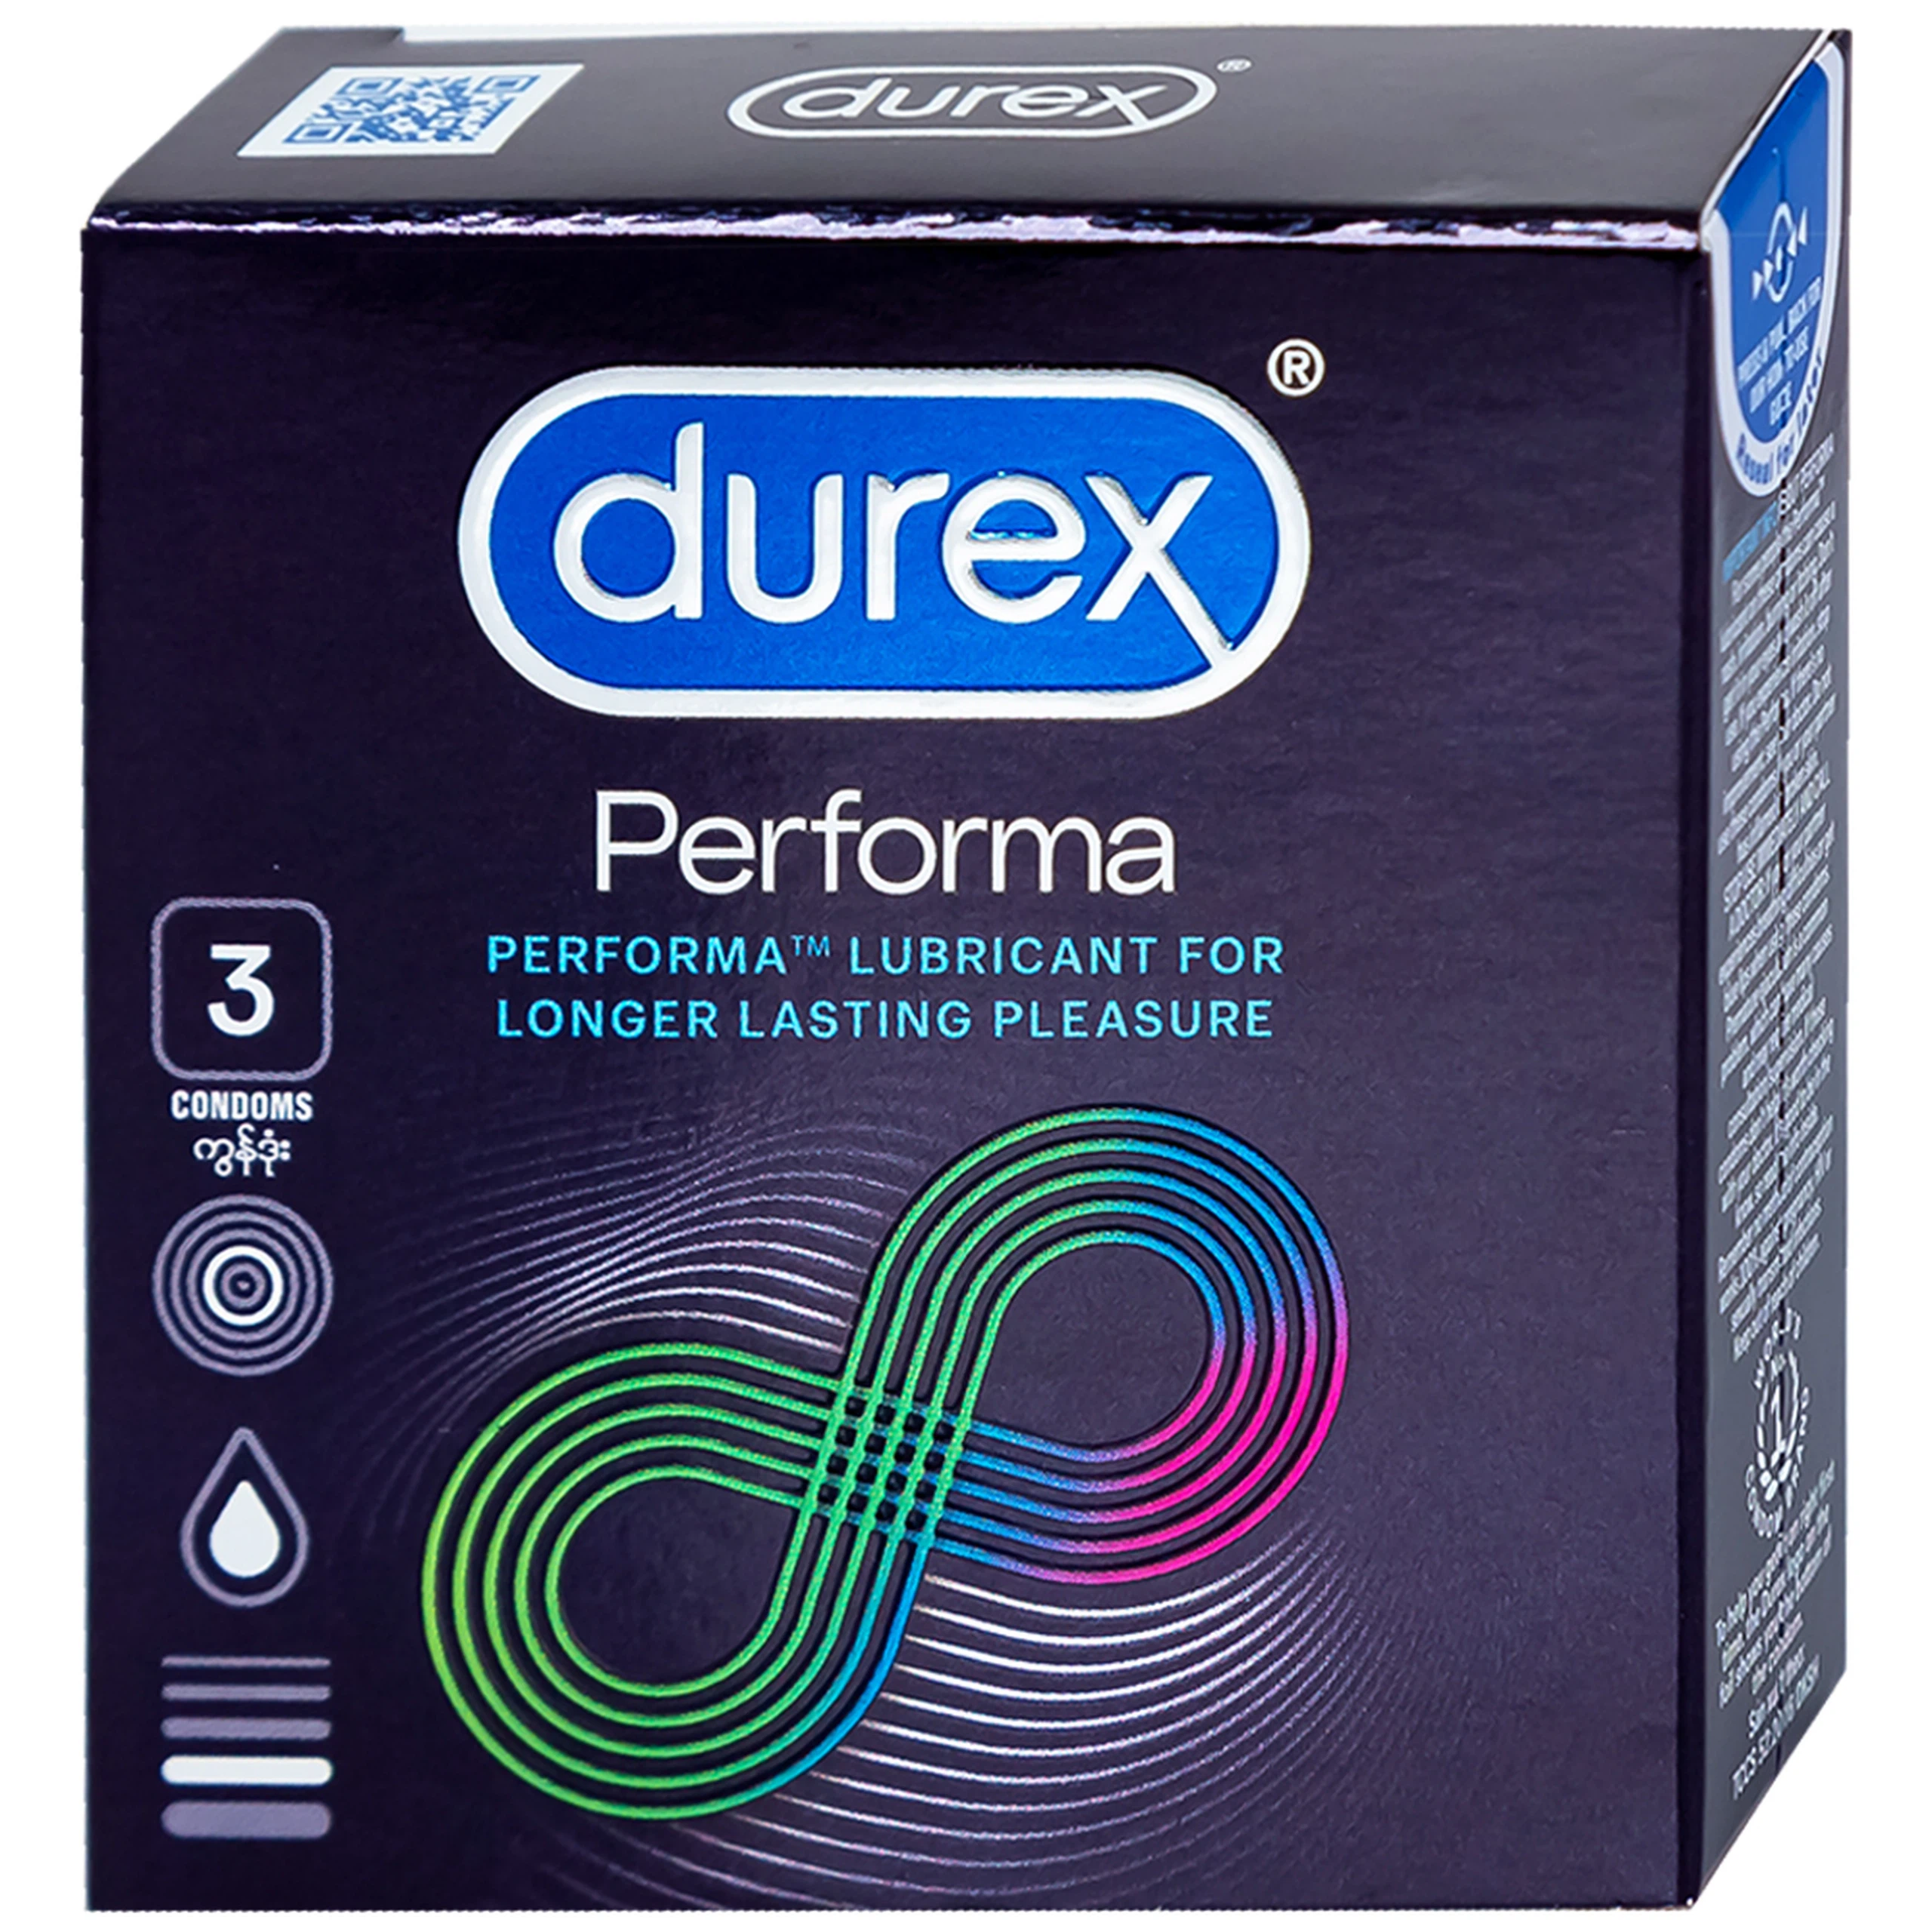 Bao cao su Durex Performa chứa nhiều gel làm mát, kéo dài thời gian quan hệ (3 cái)